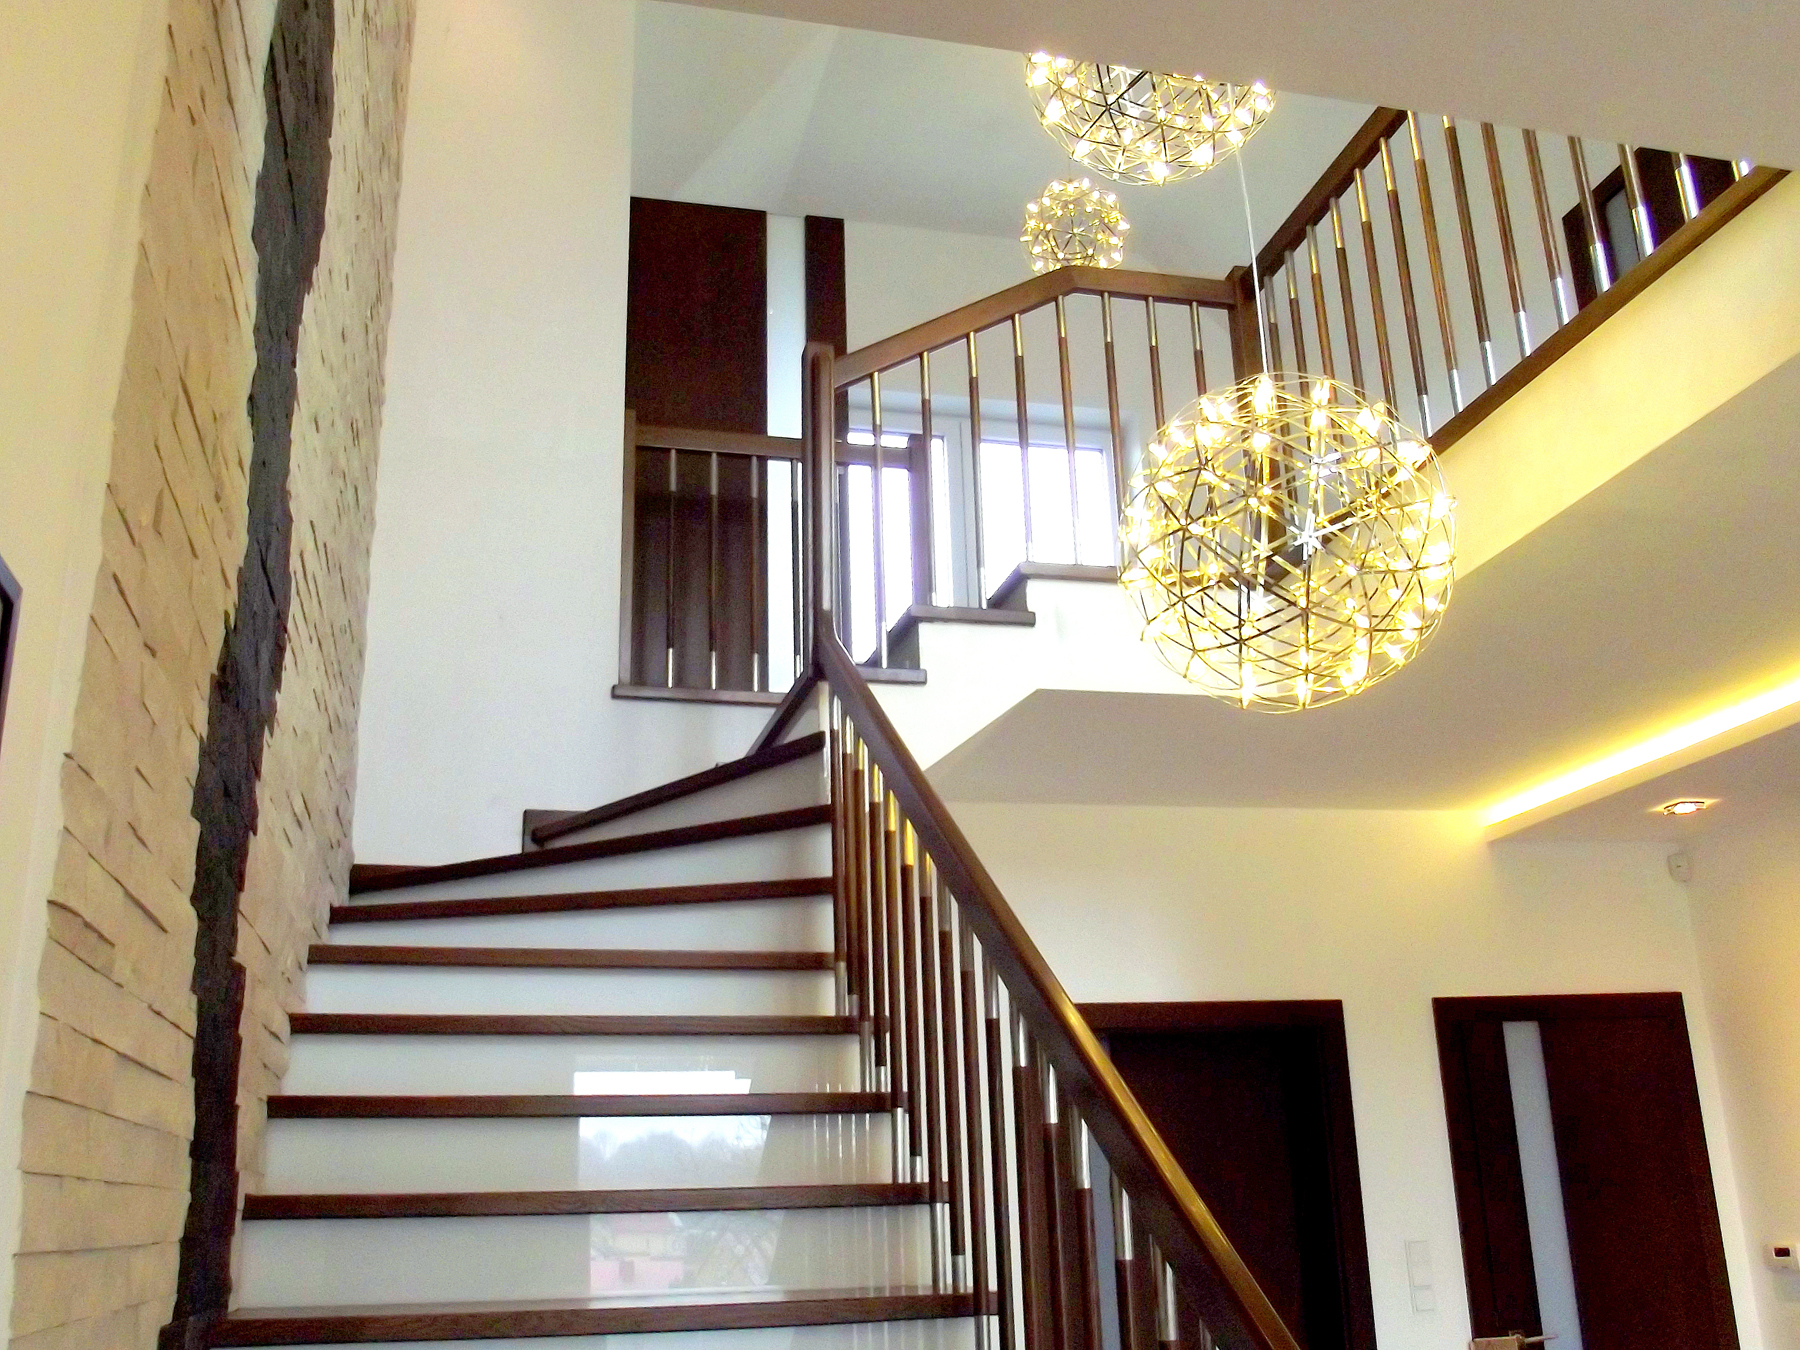 Drewniane schody oraz balustrada